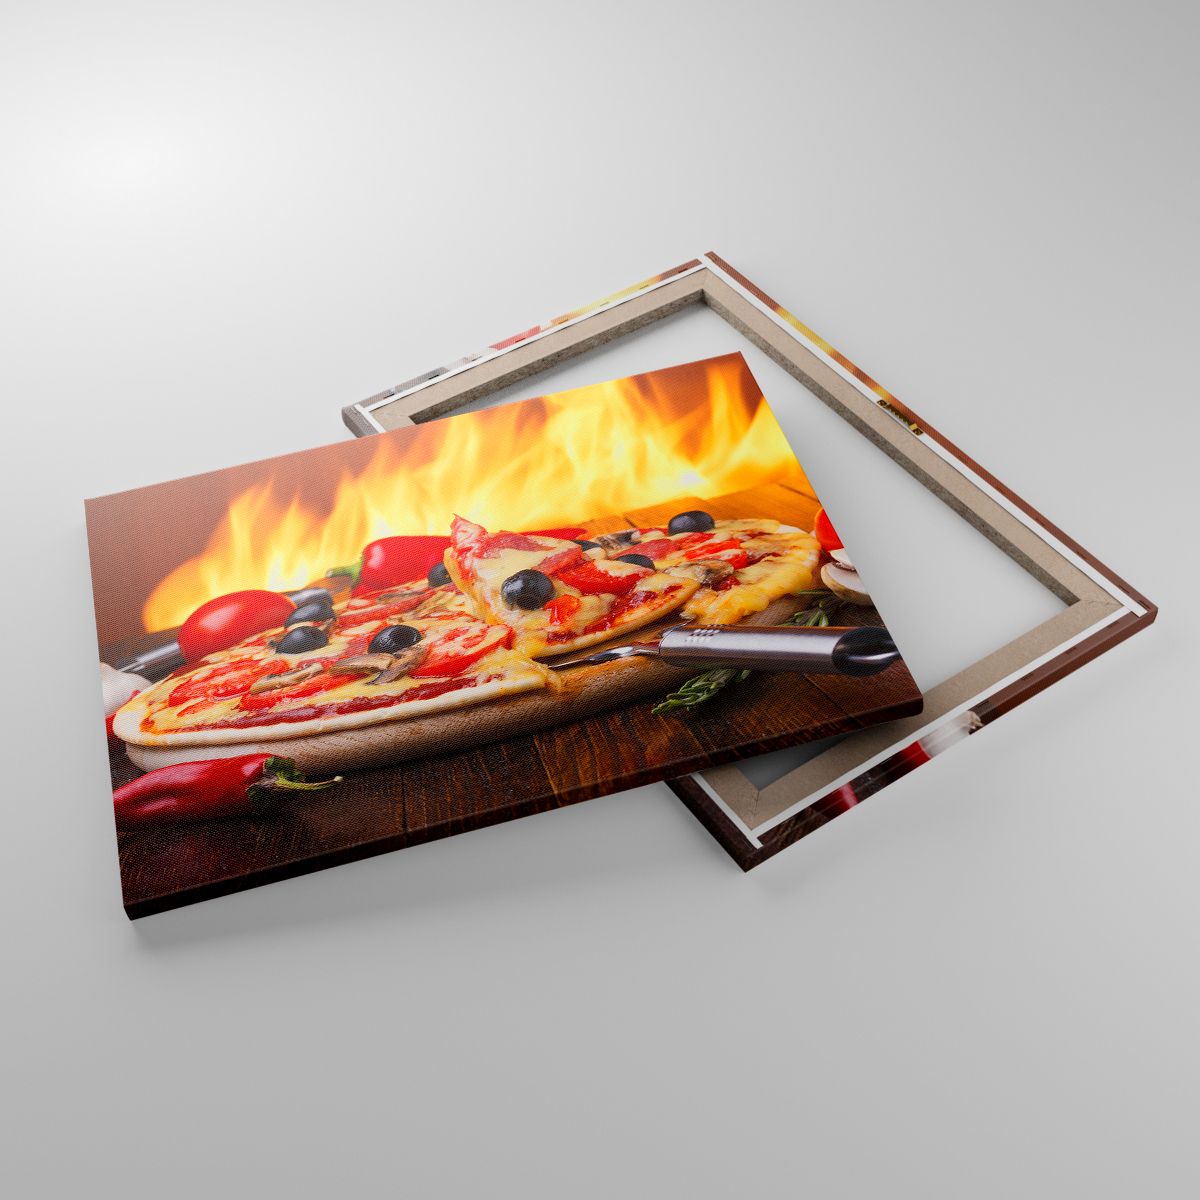 Impression La Gastronomie, Impression Pizza, Impression Italie, Impression Feu, Impression Plat Délicieux